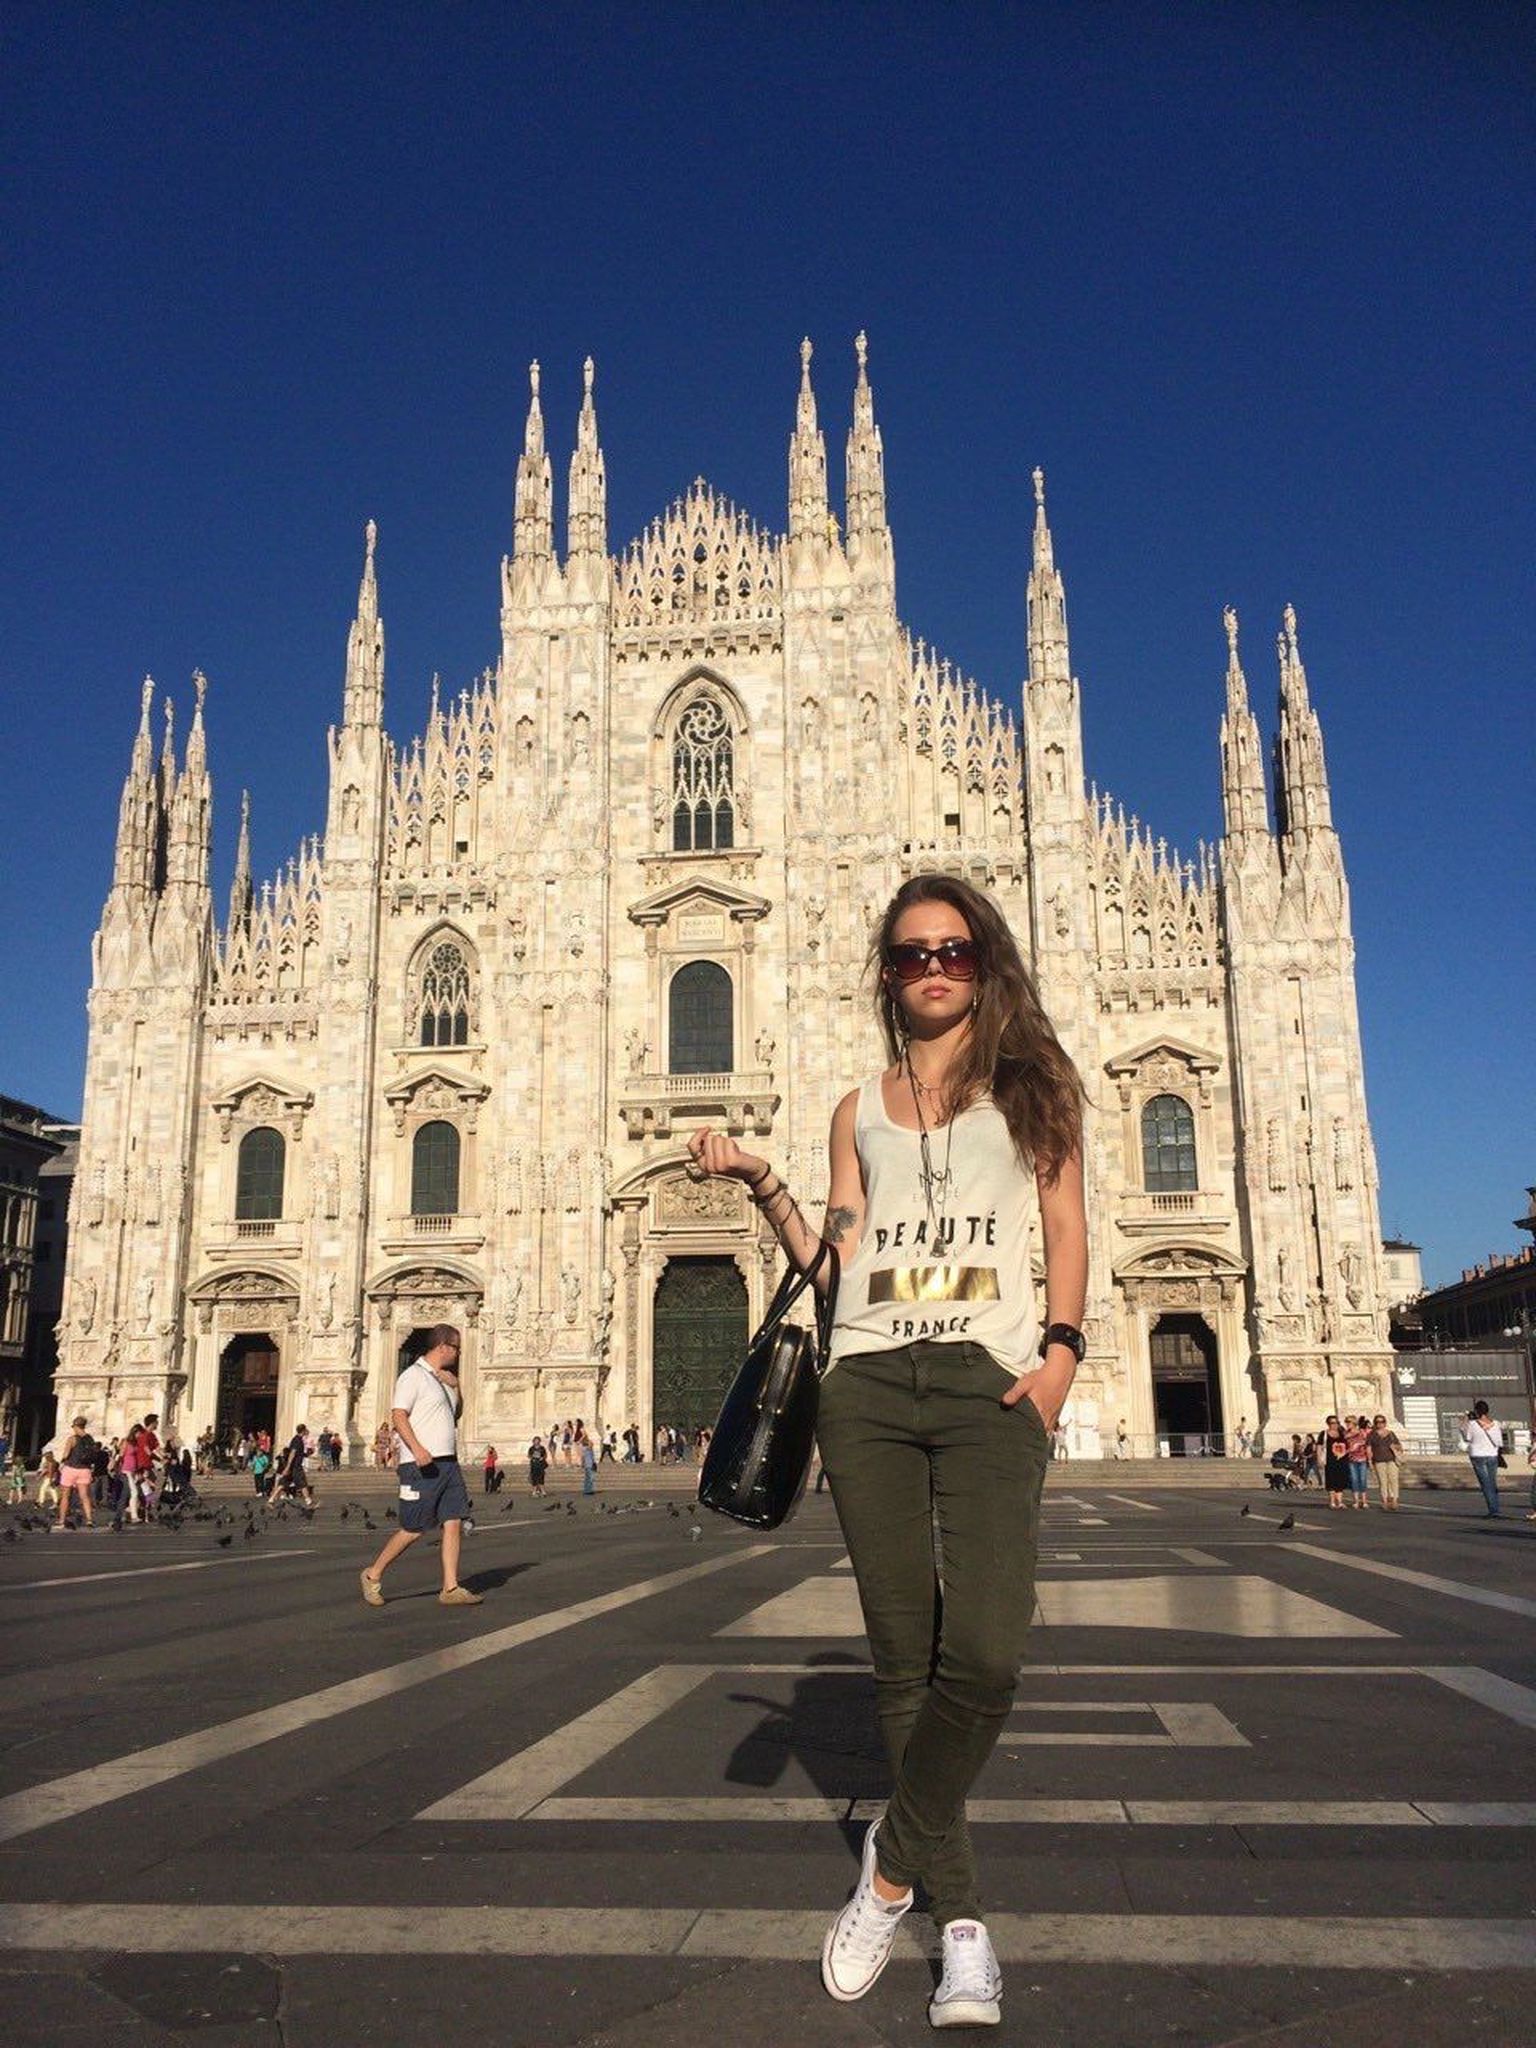 Kohustuslik turistikas: Grete Paia Milano toomkirik ees, mis on üks suuremaid gooti katedraale maailmas.